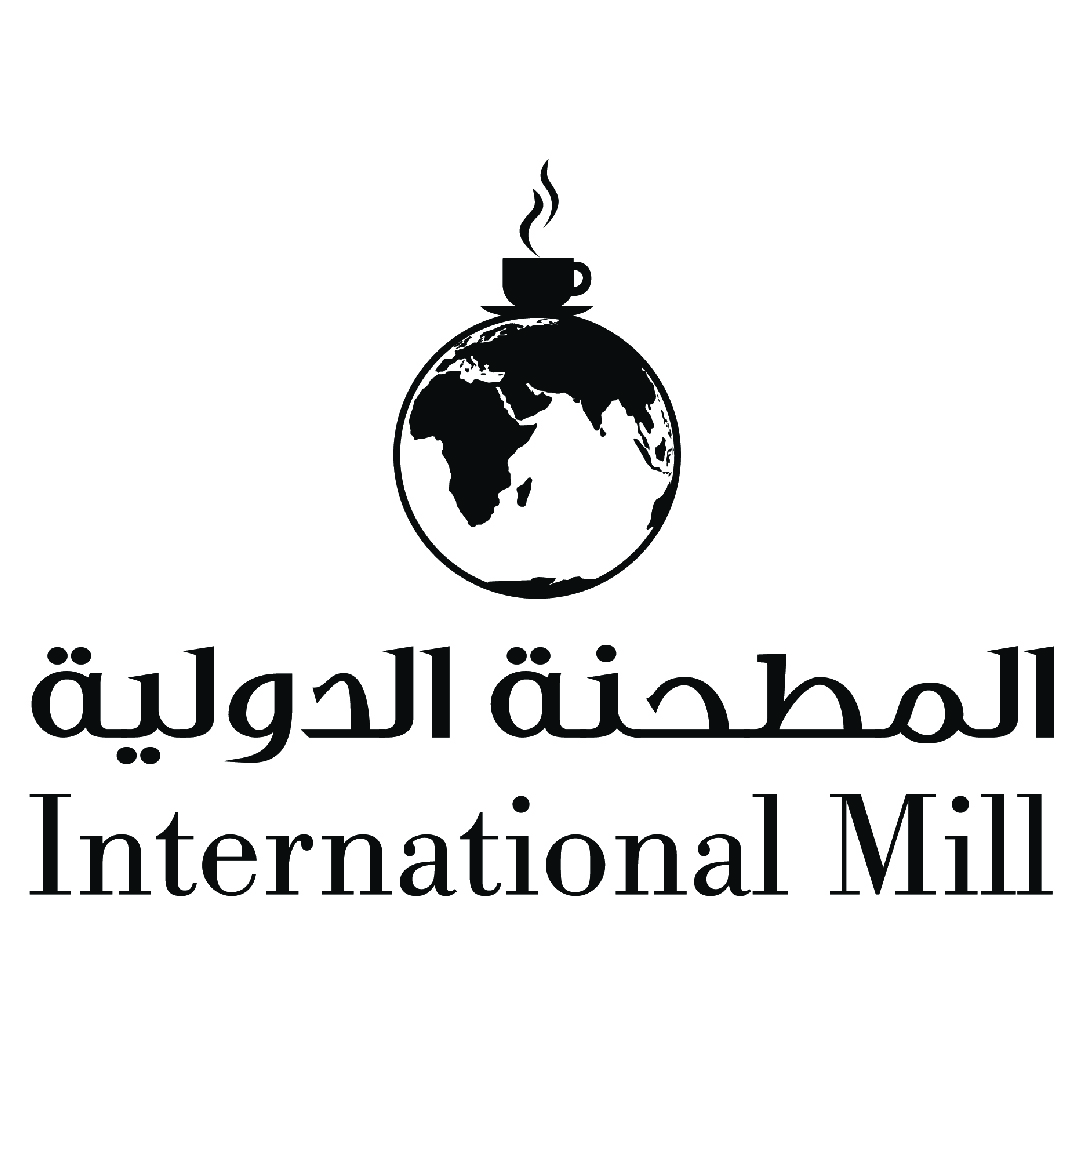 International Mill